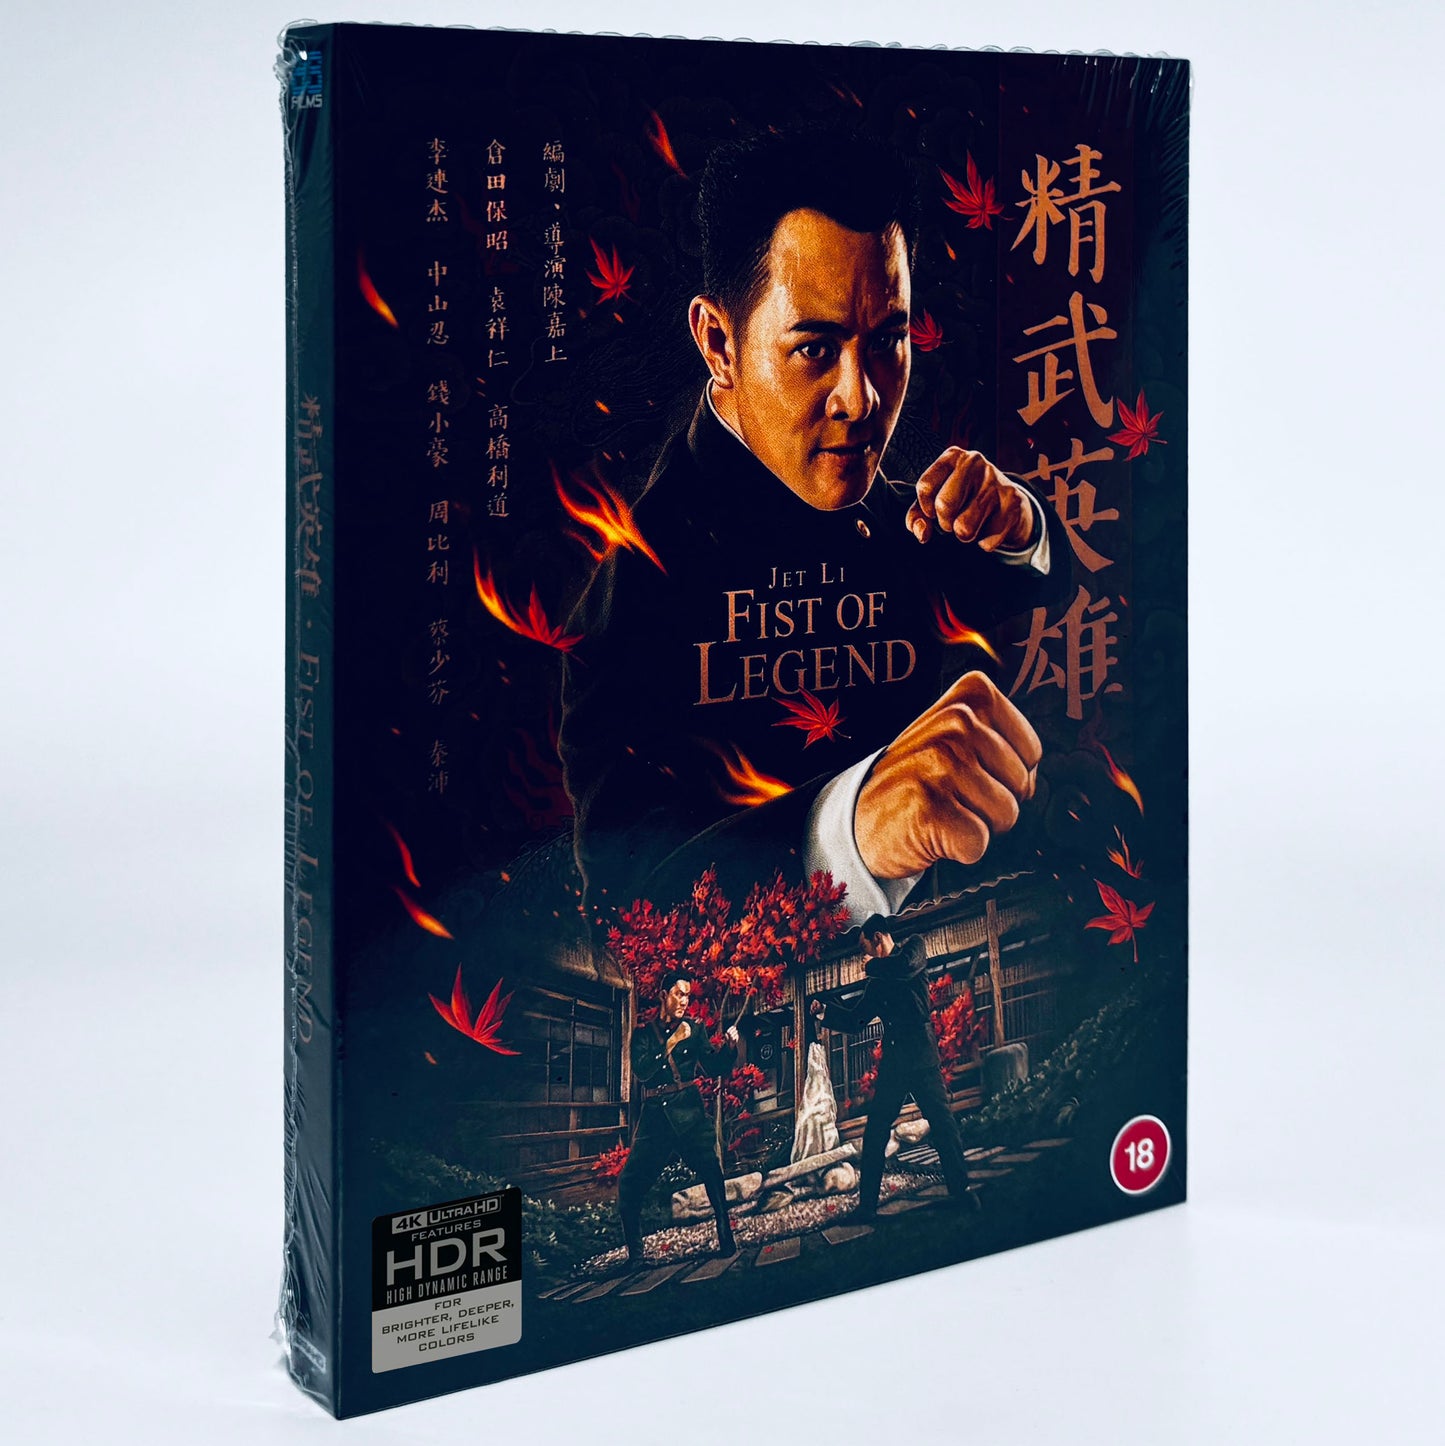 Fist of Legend Jet Li 4K UHD Blu-ray 88 Films Ultra HD Yuen Woo Ping Gordon Chan